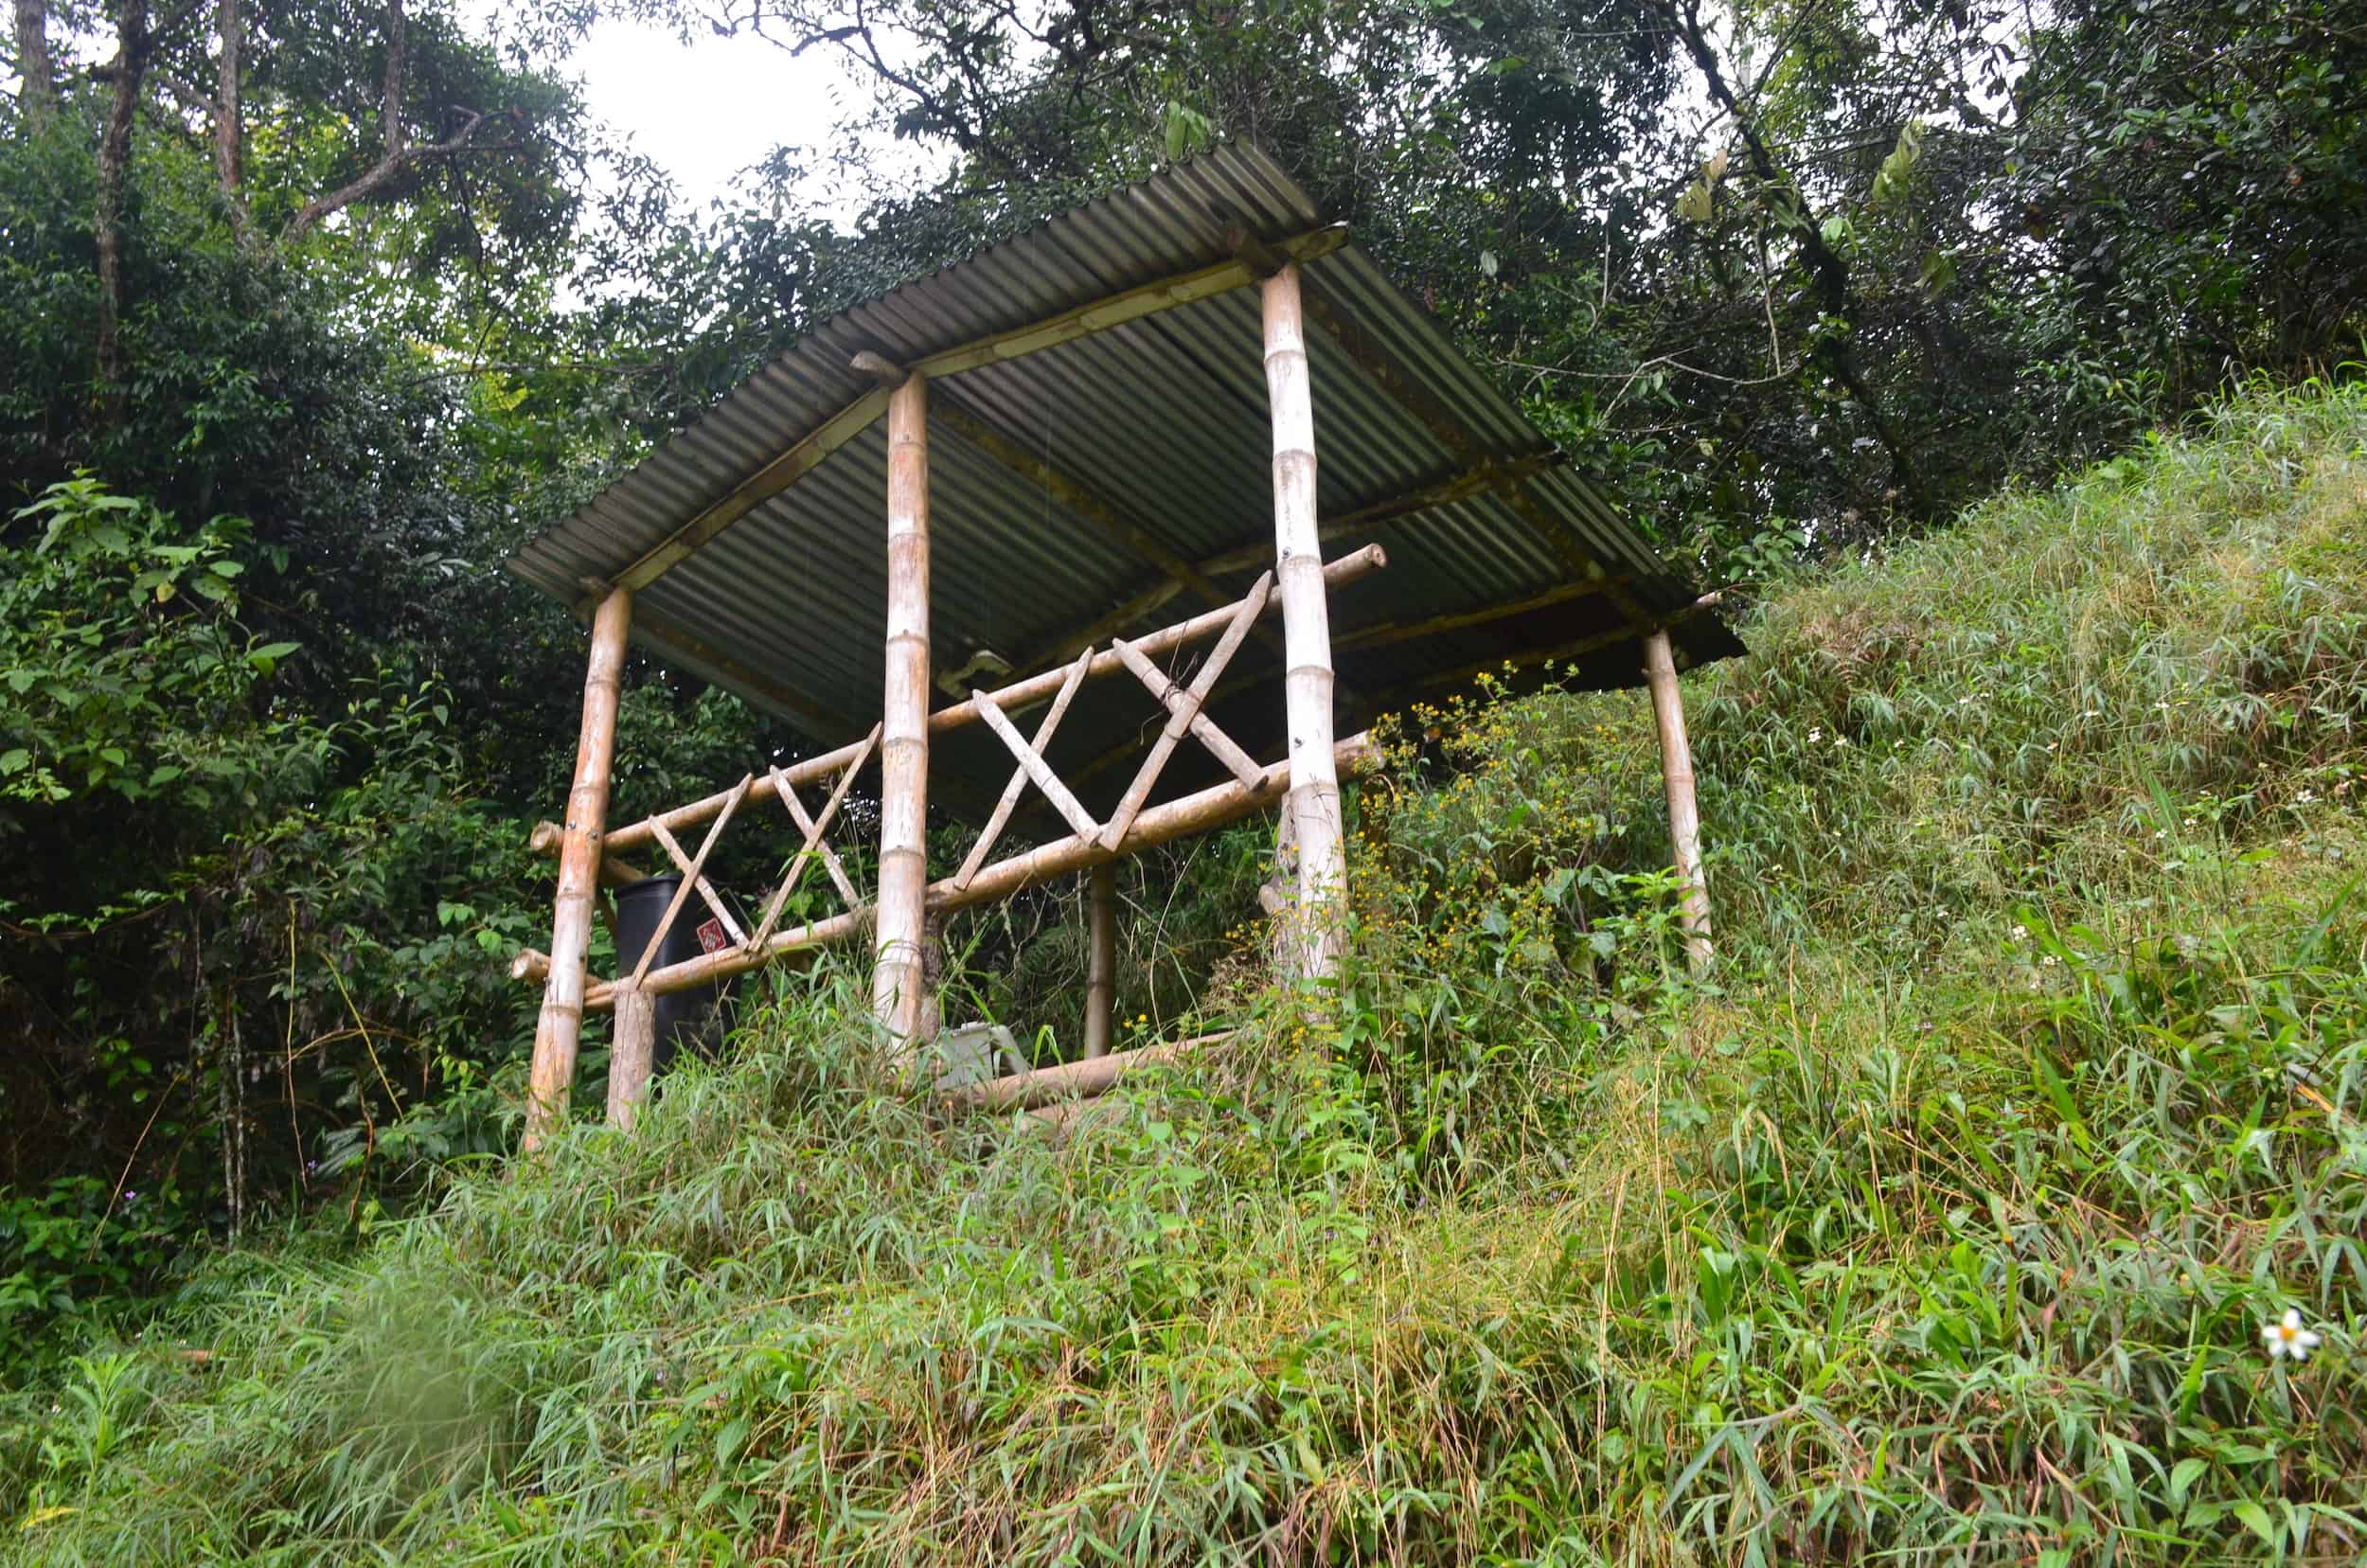 Mirador at Santa Rita Nature Reserve in Boquía, Salento, Quindío, Colombia